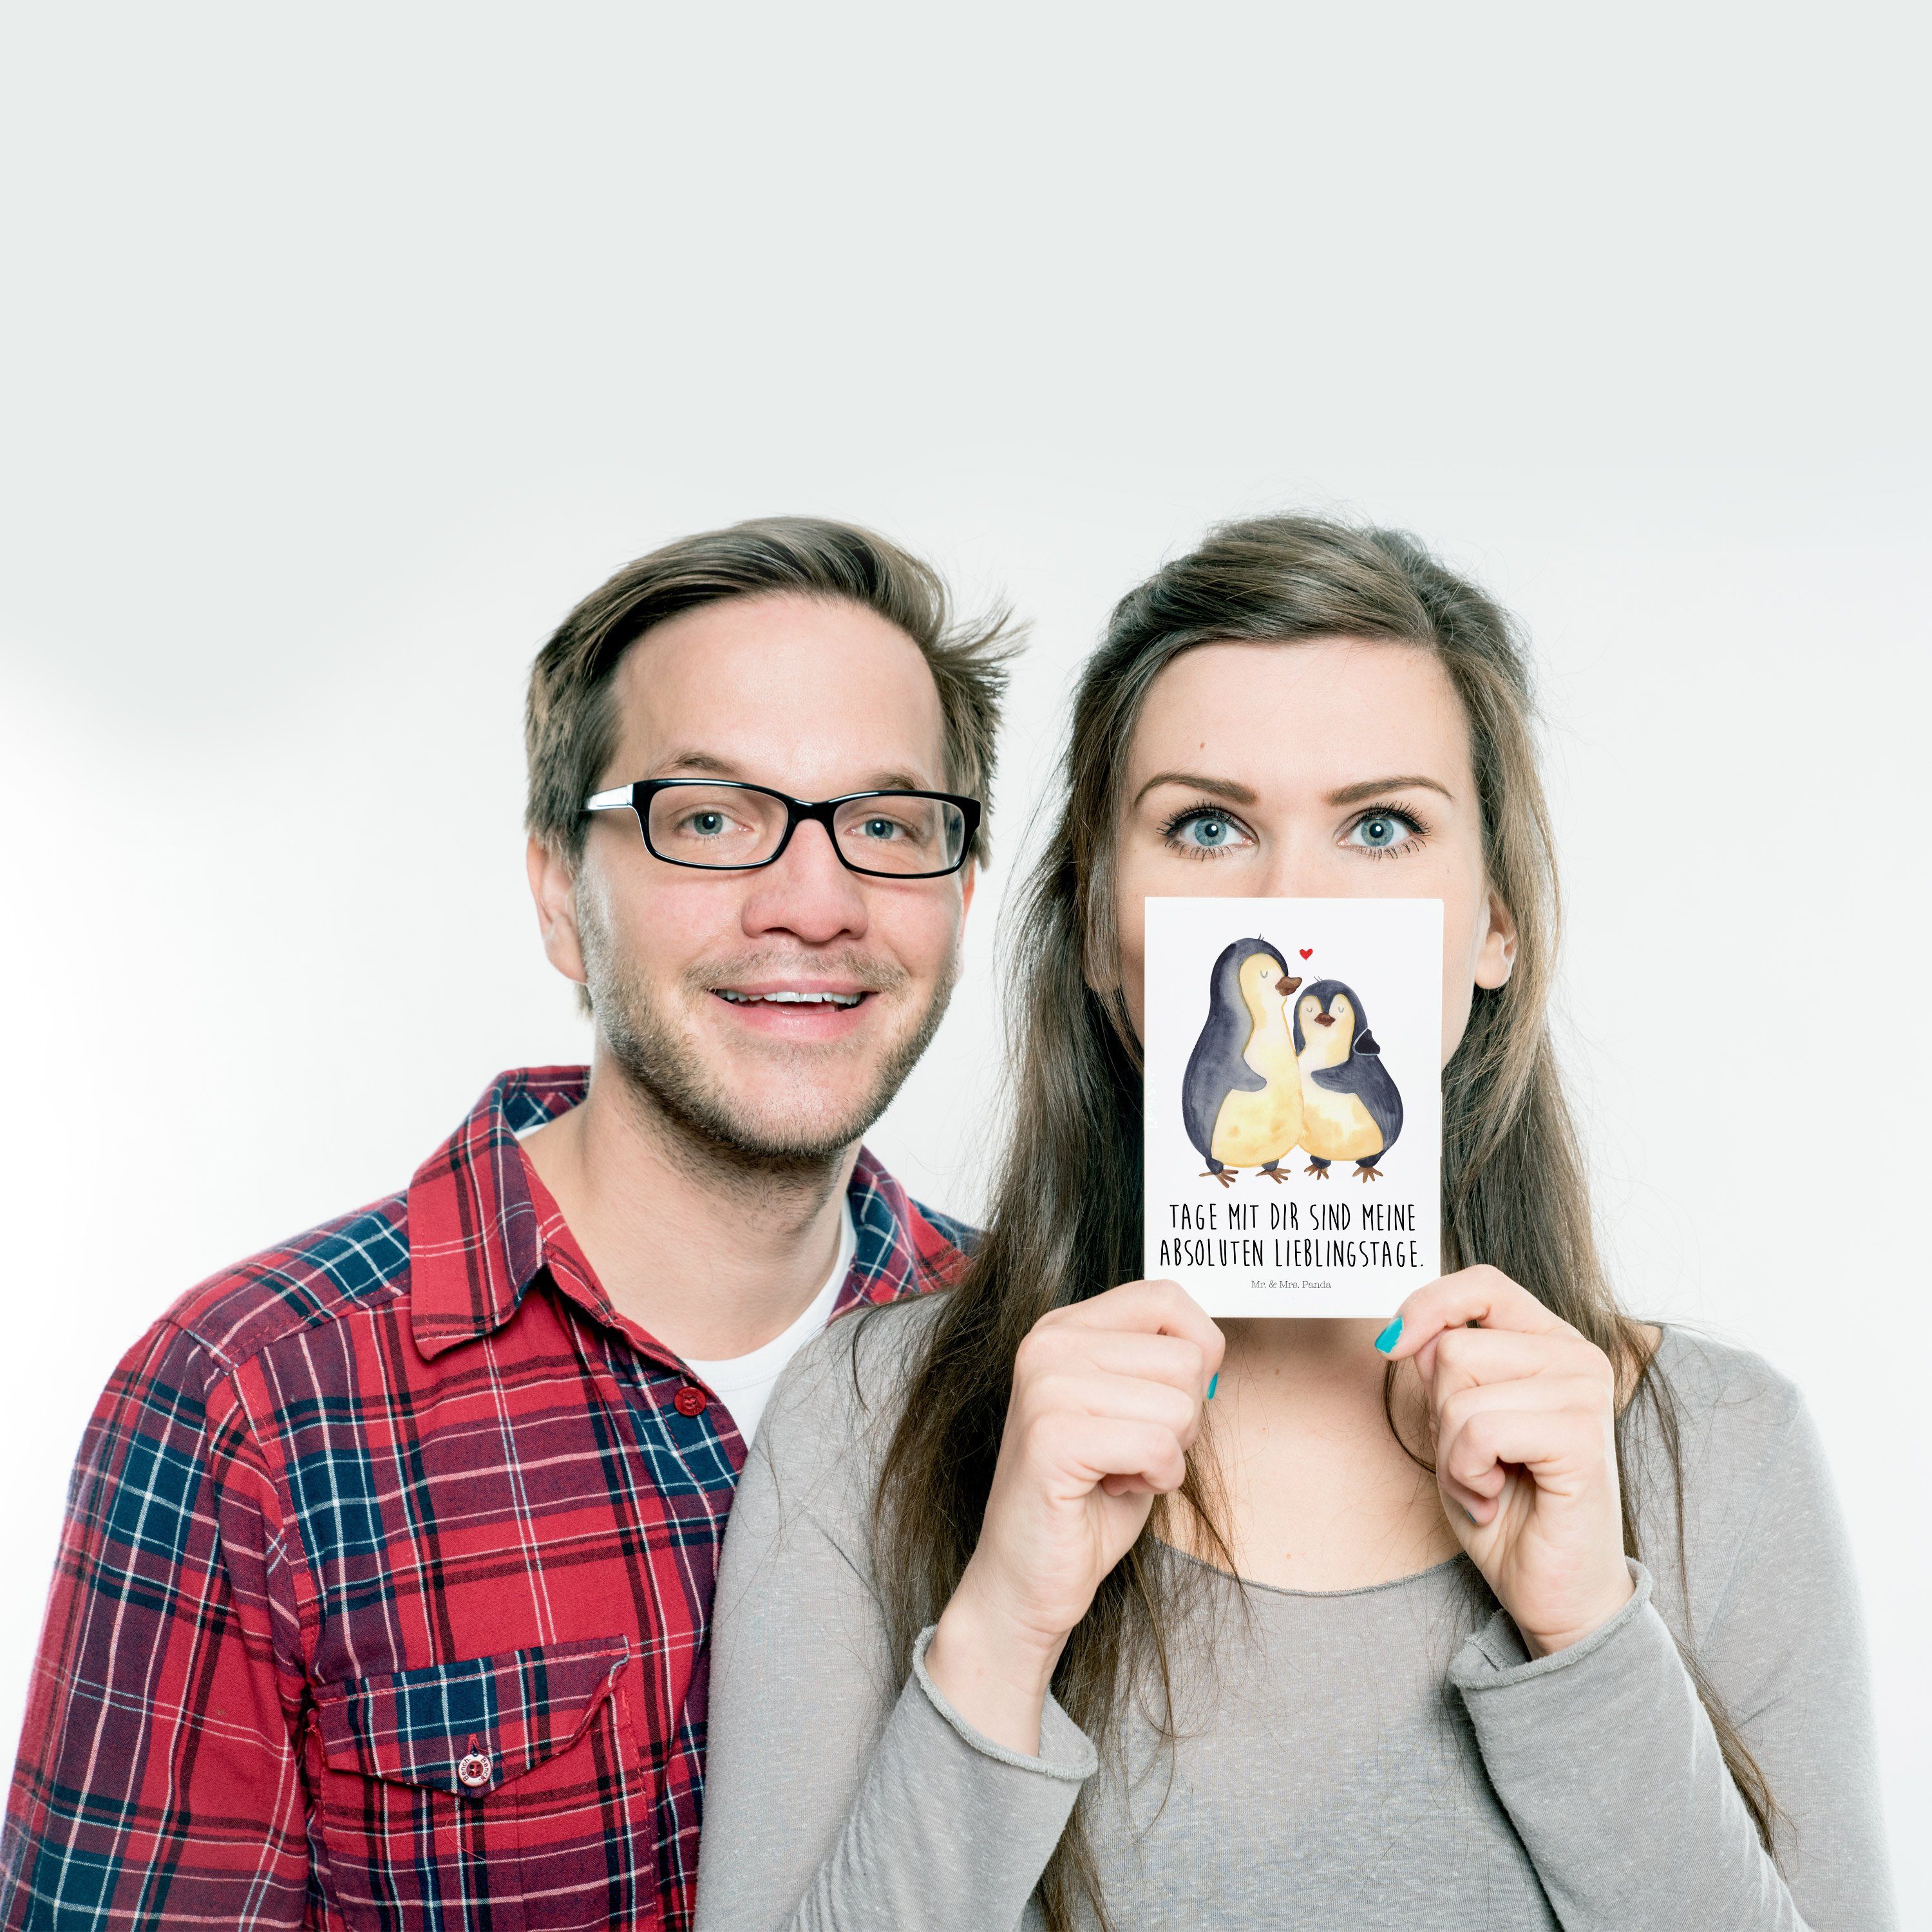 Pinguin Hochzeit - Weiß umarmend Liebesbeweis, Geschenk, & Mrs. Mr. - Panda Postkarte Grußkarte,